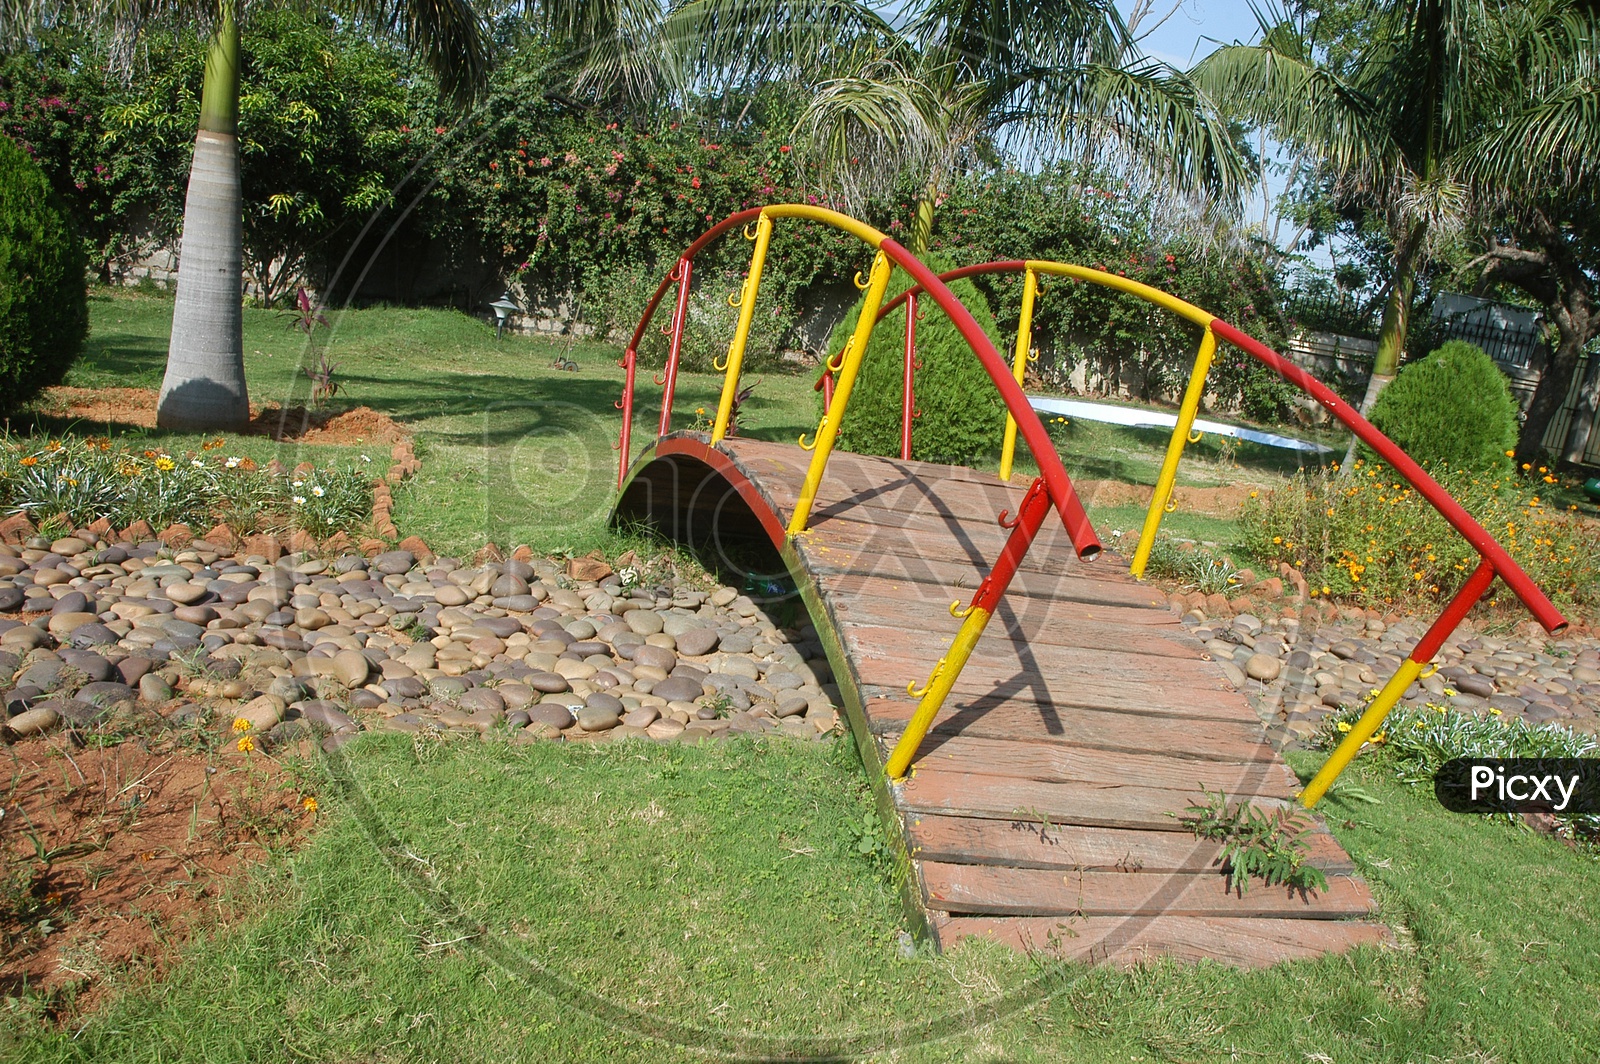 A Small Bridge In a Lawn Garden